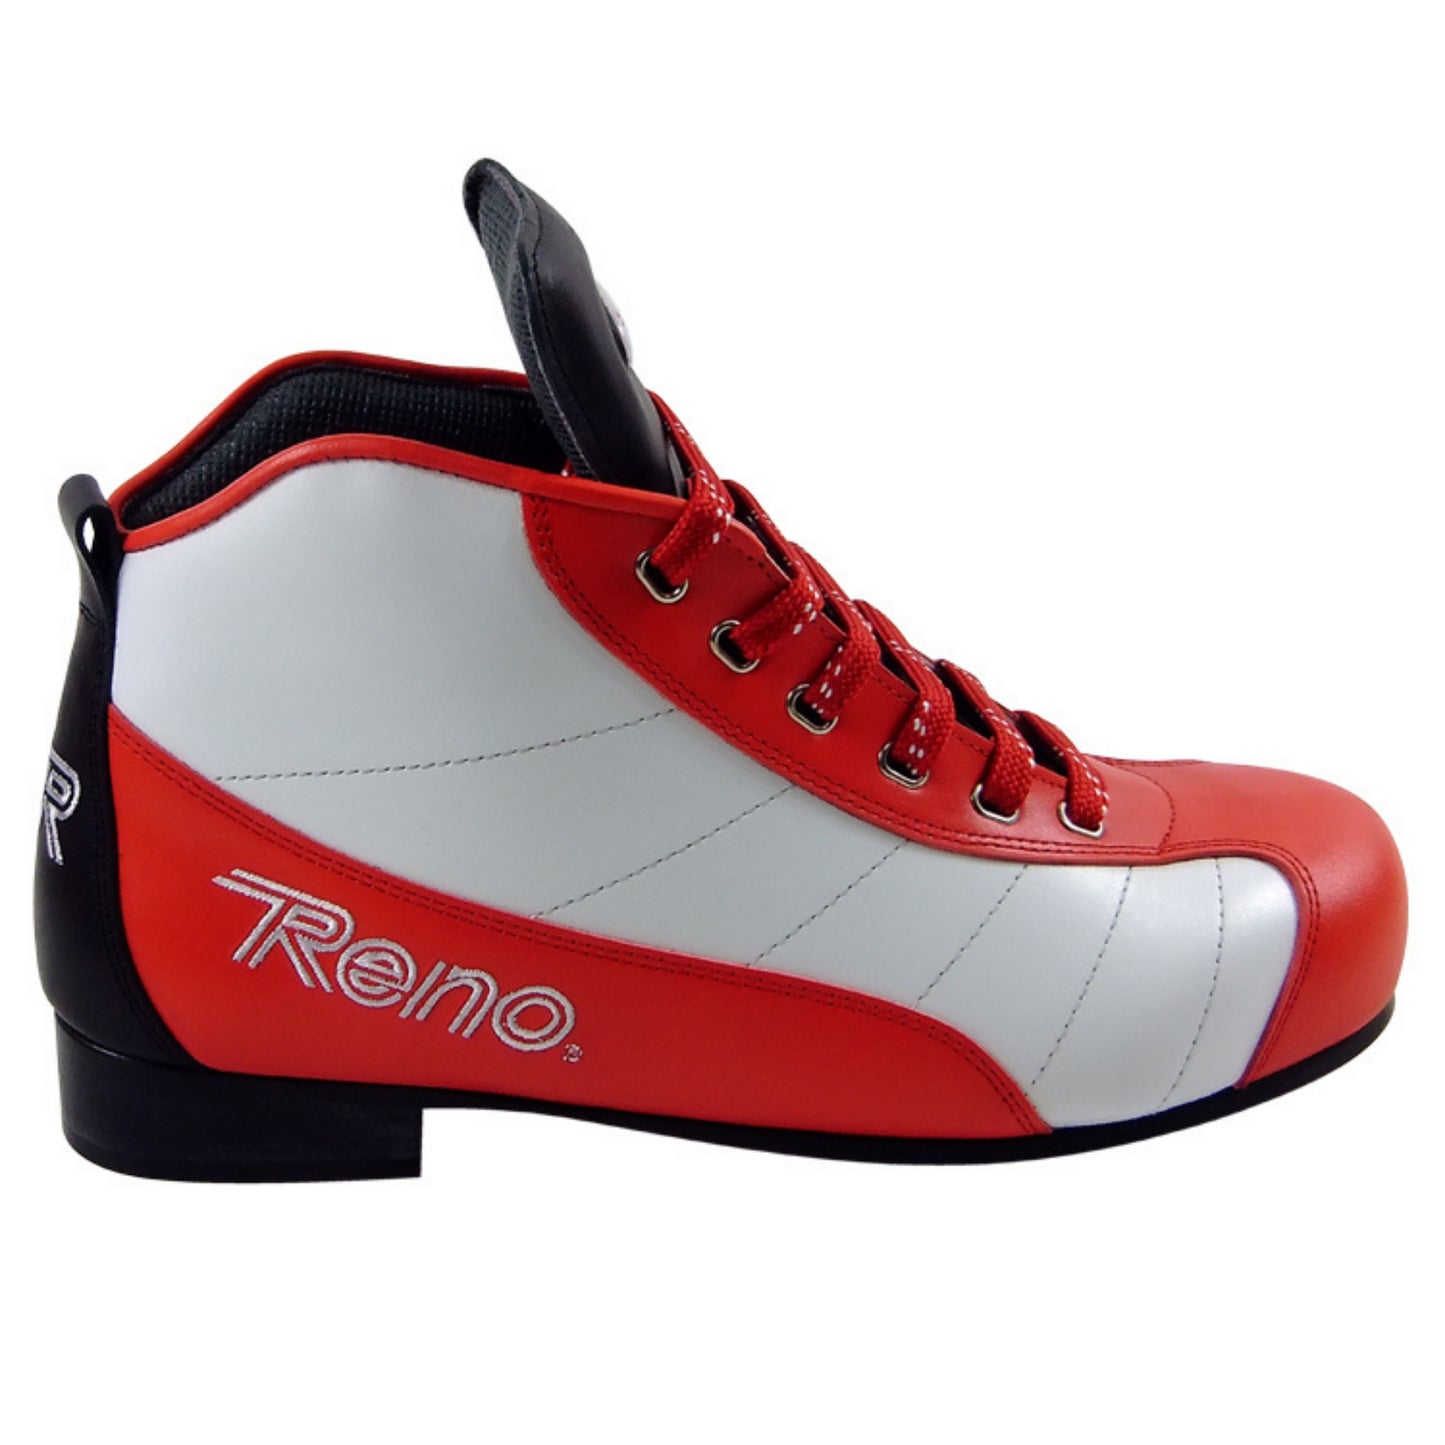 RENO Millennium Plus 3 Boots